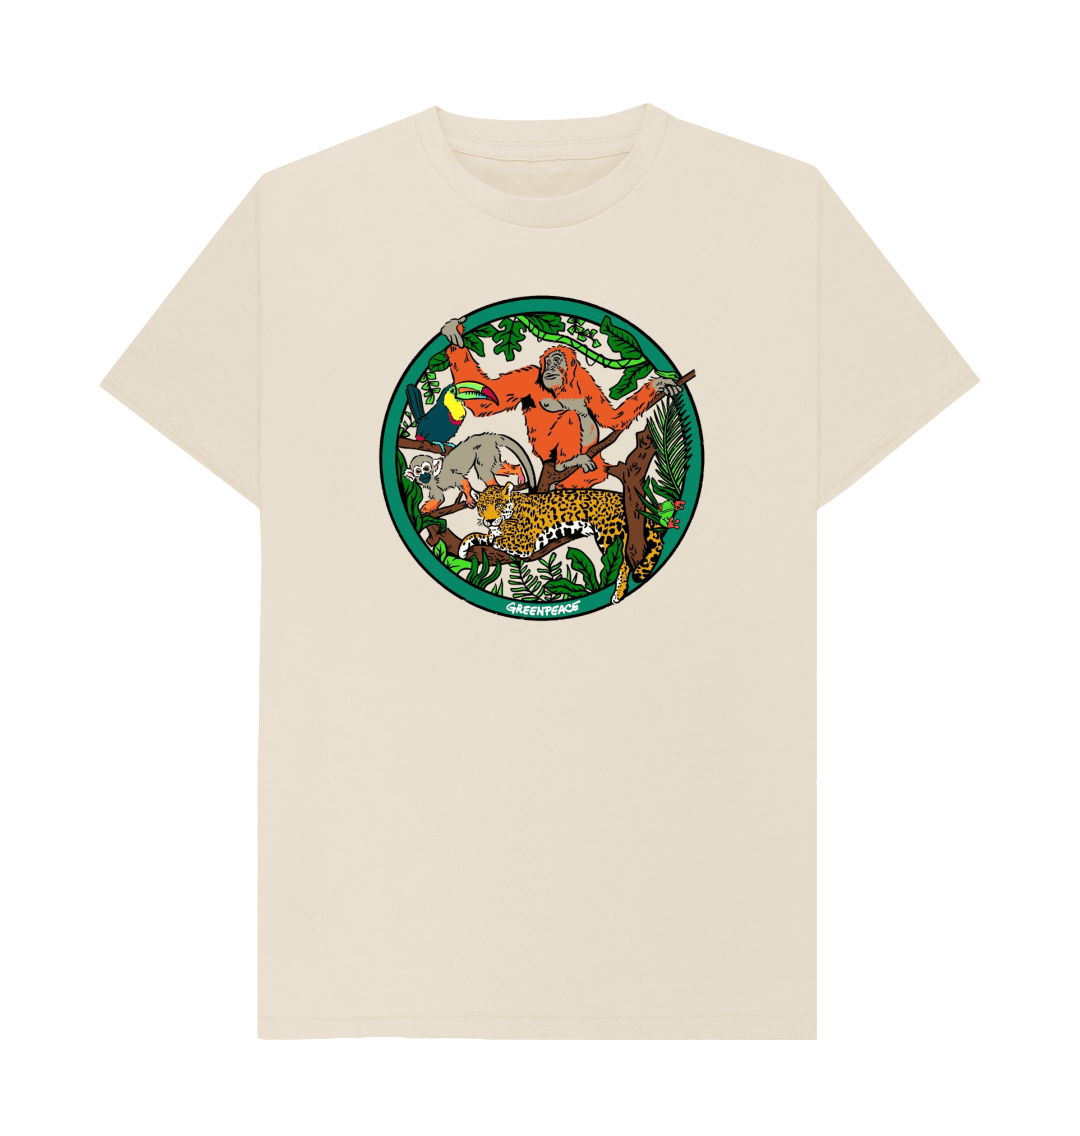 Rainforest T-shirt